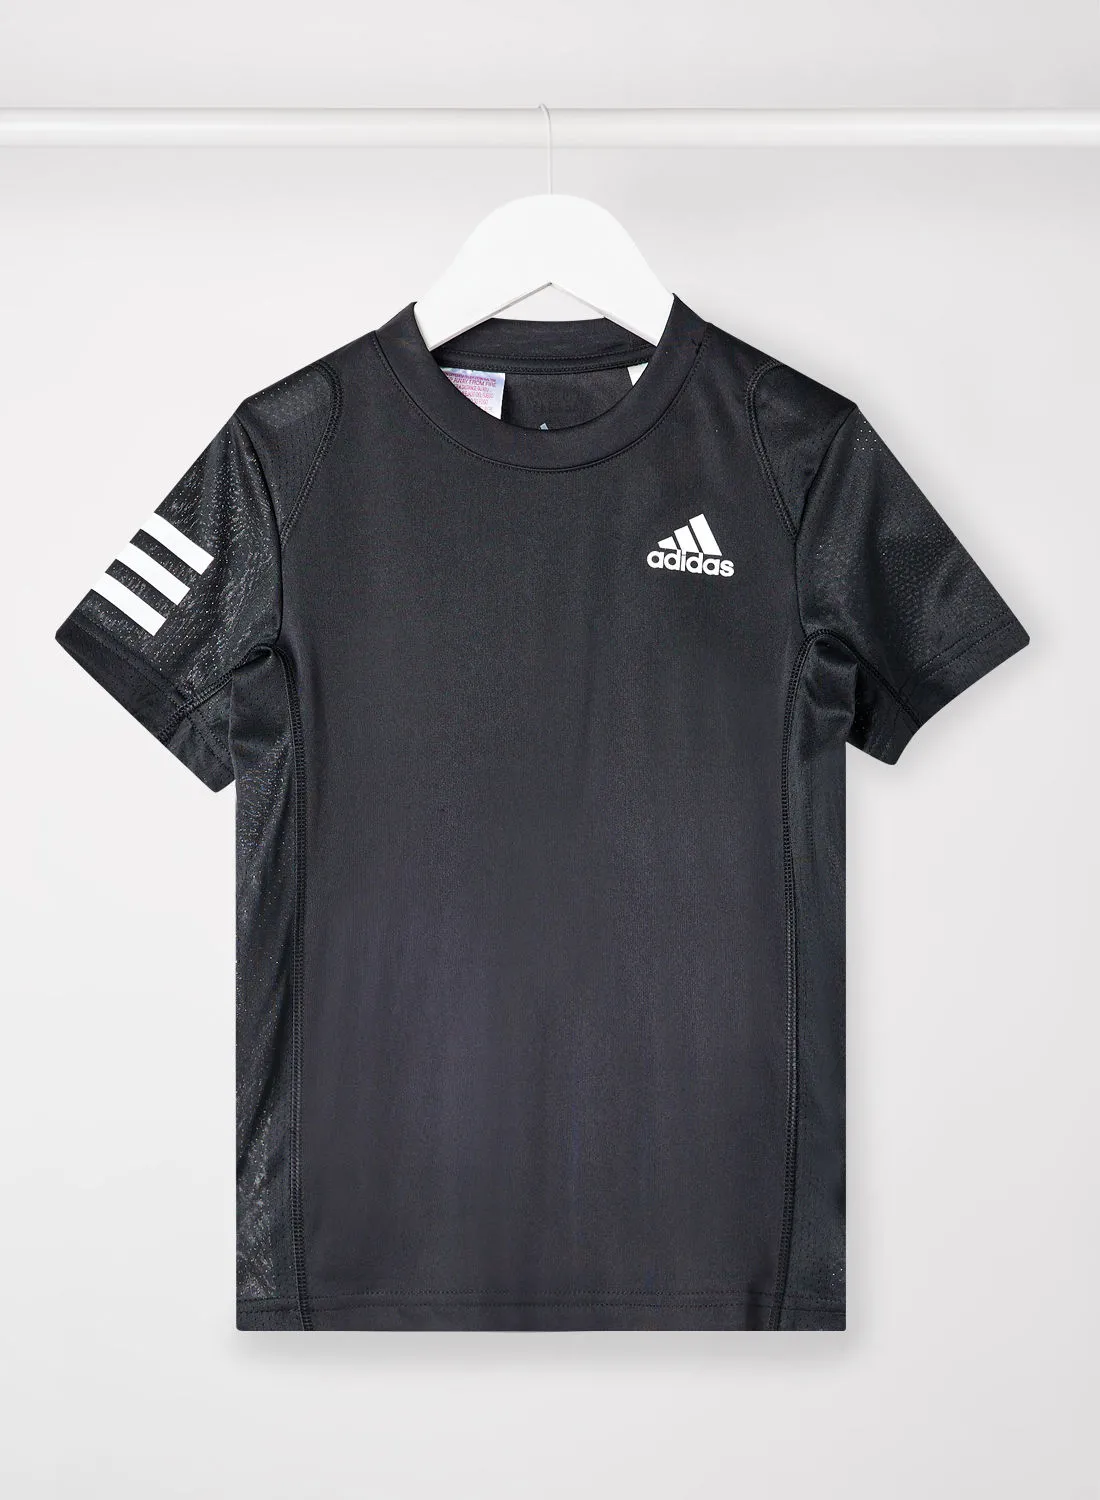 Adidas Boys Club Tennis 3-Stripes T-Shirt